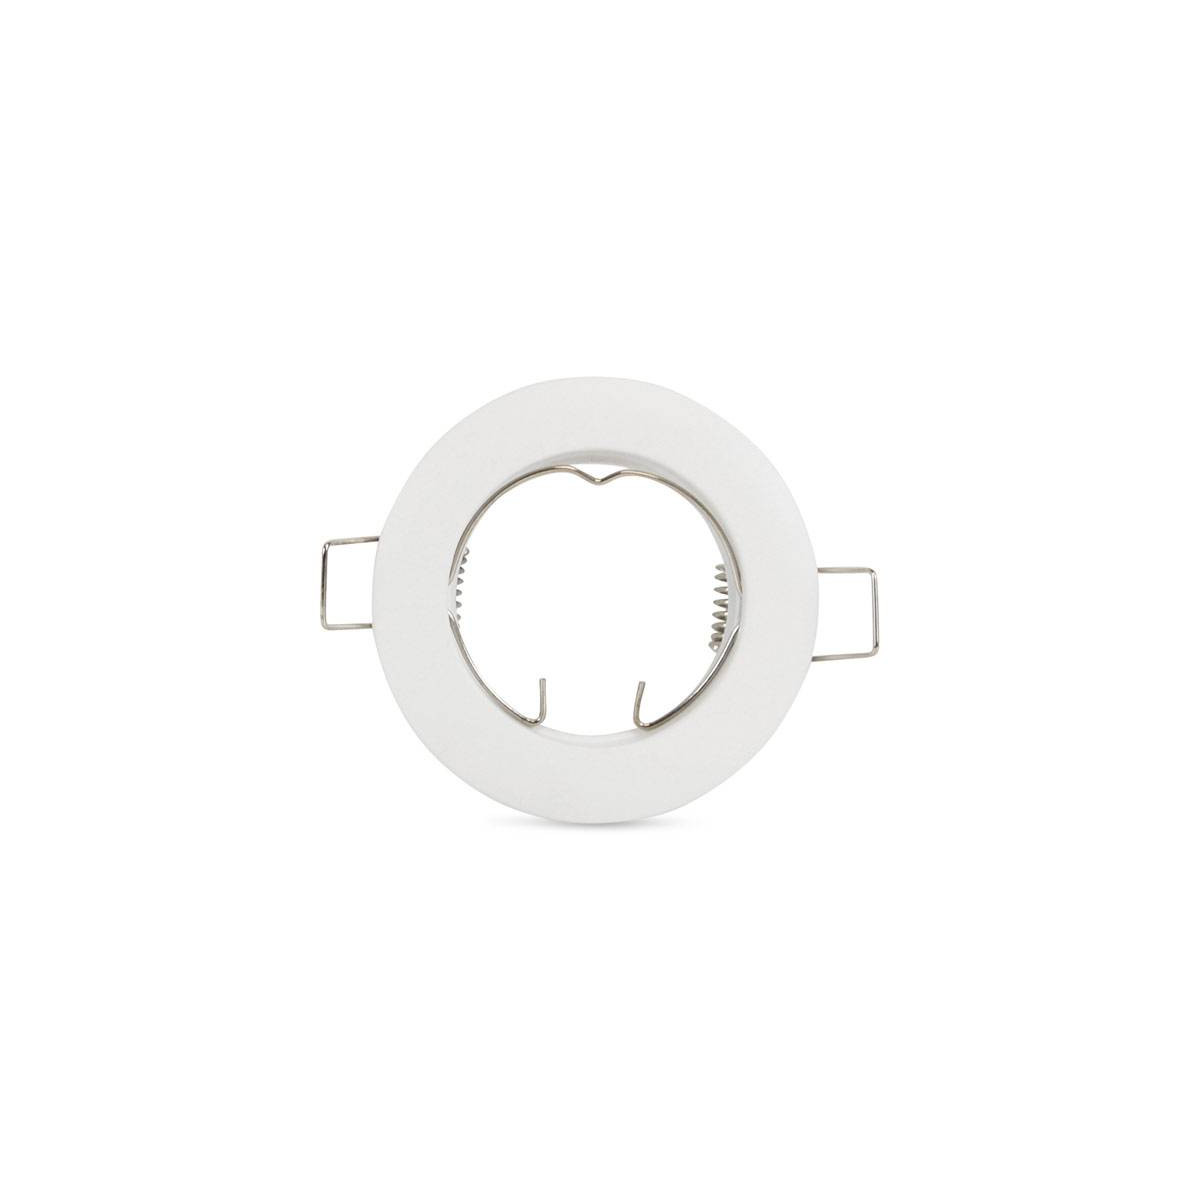 Round downlight ring for GU10 / MR16 bulb - Cutout Ø62 mm